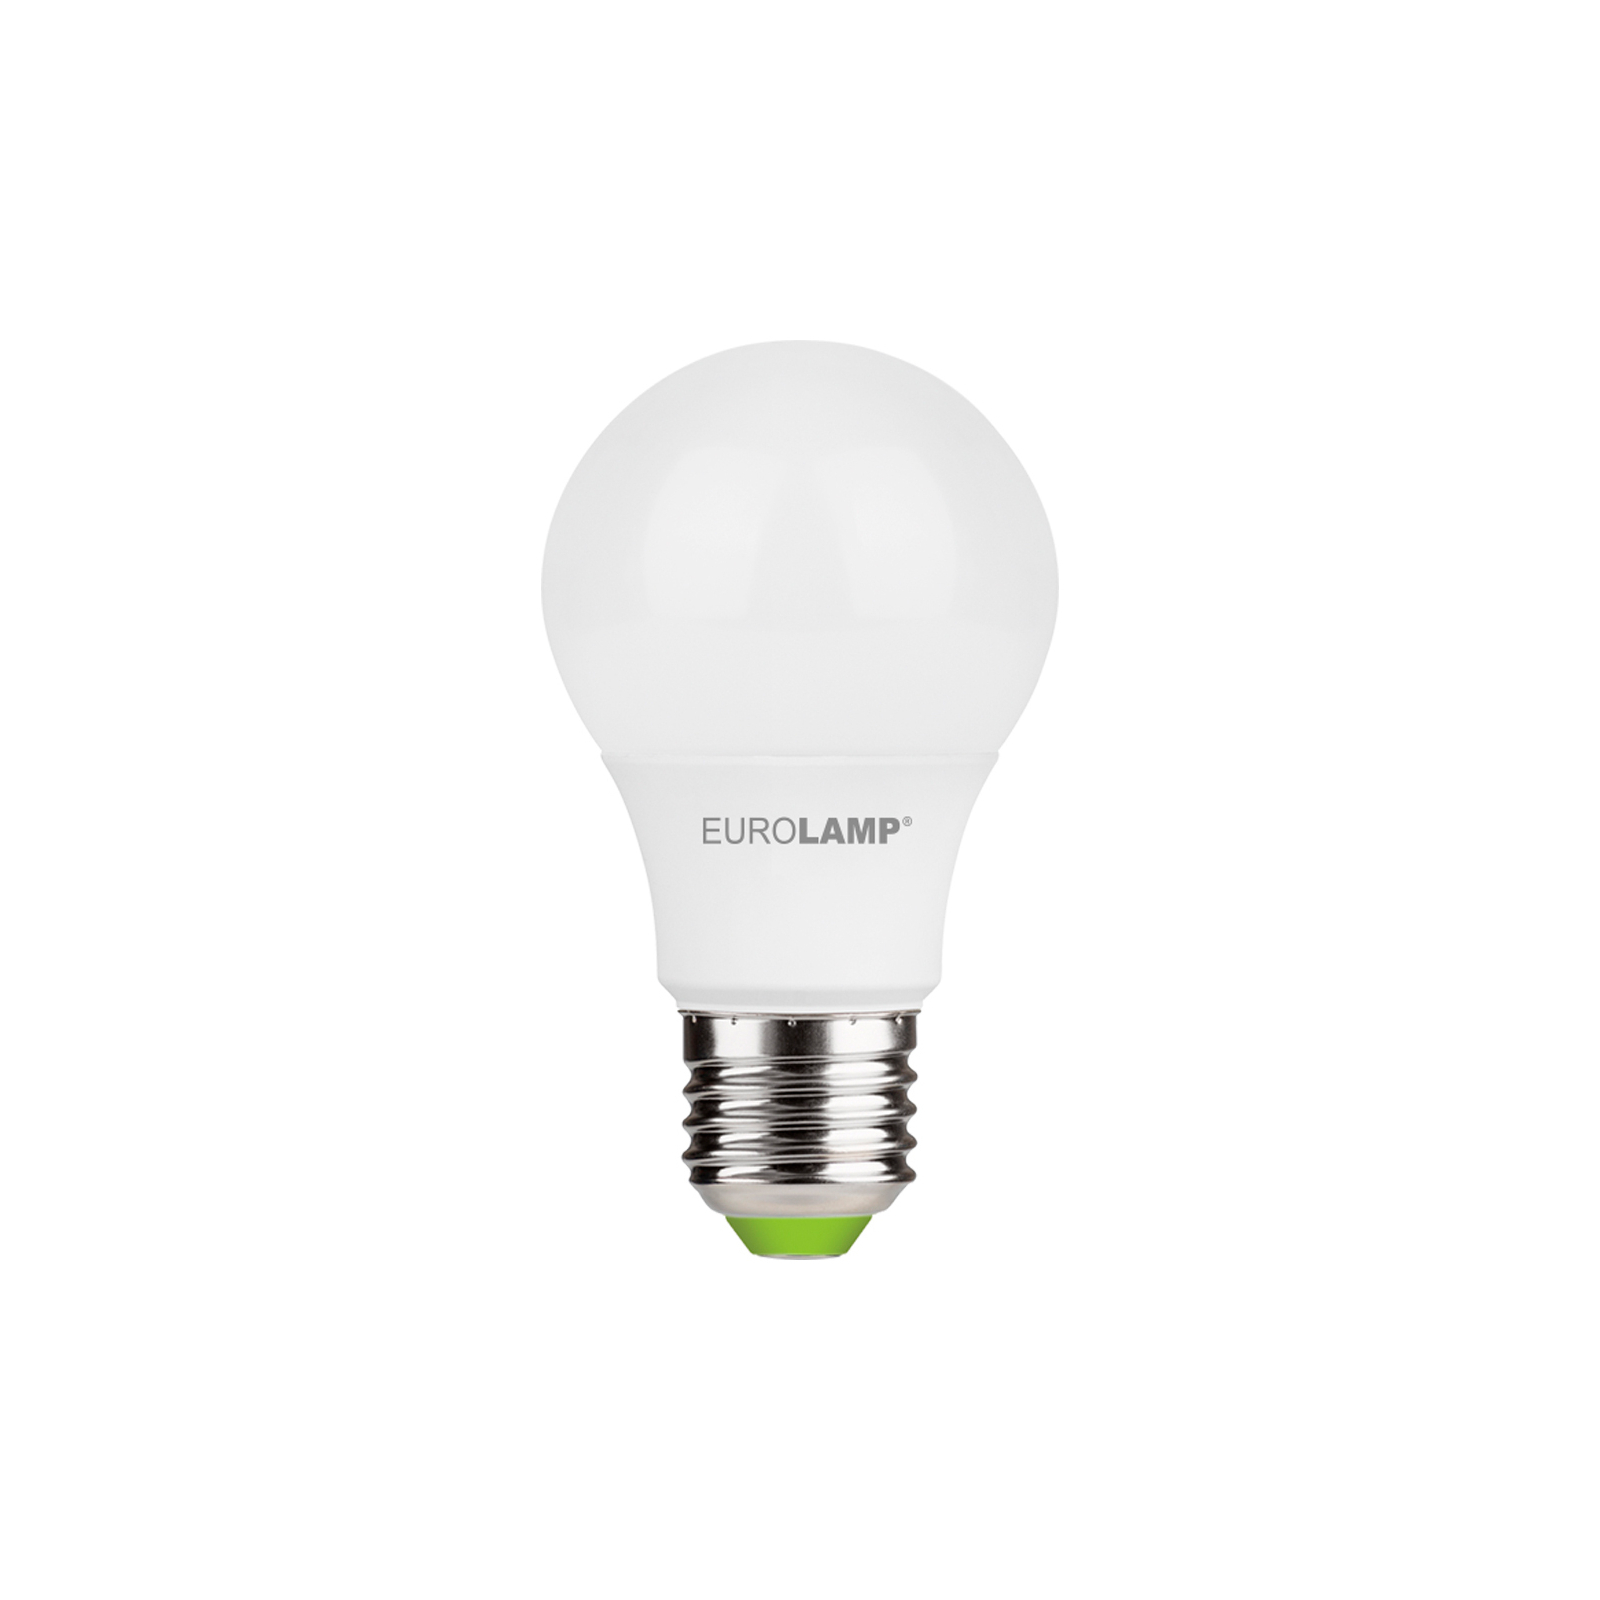 Лампочка Eurolamp LED A60 7W E27 3000K 220V акция 1+1 (MLP-LED-A60-07272(E)) изображение 2